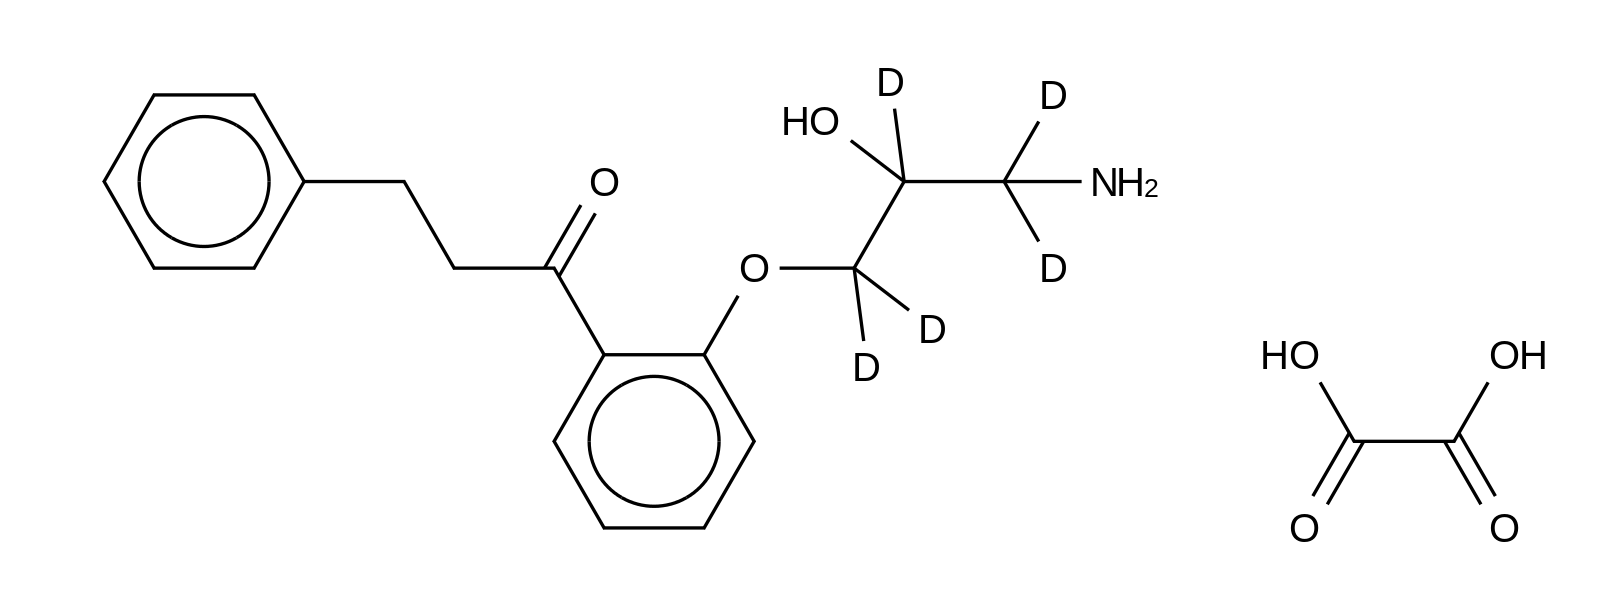 N-Depropyl Propafenone-d<sub>5</sub> Oxalate Salt